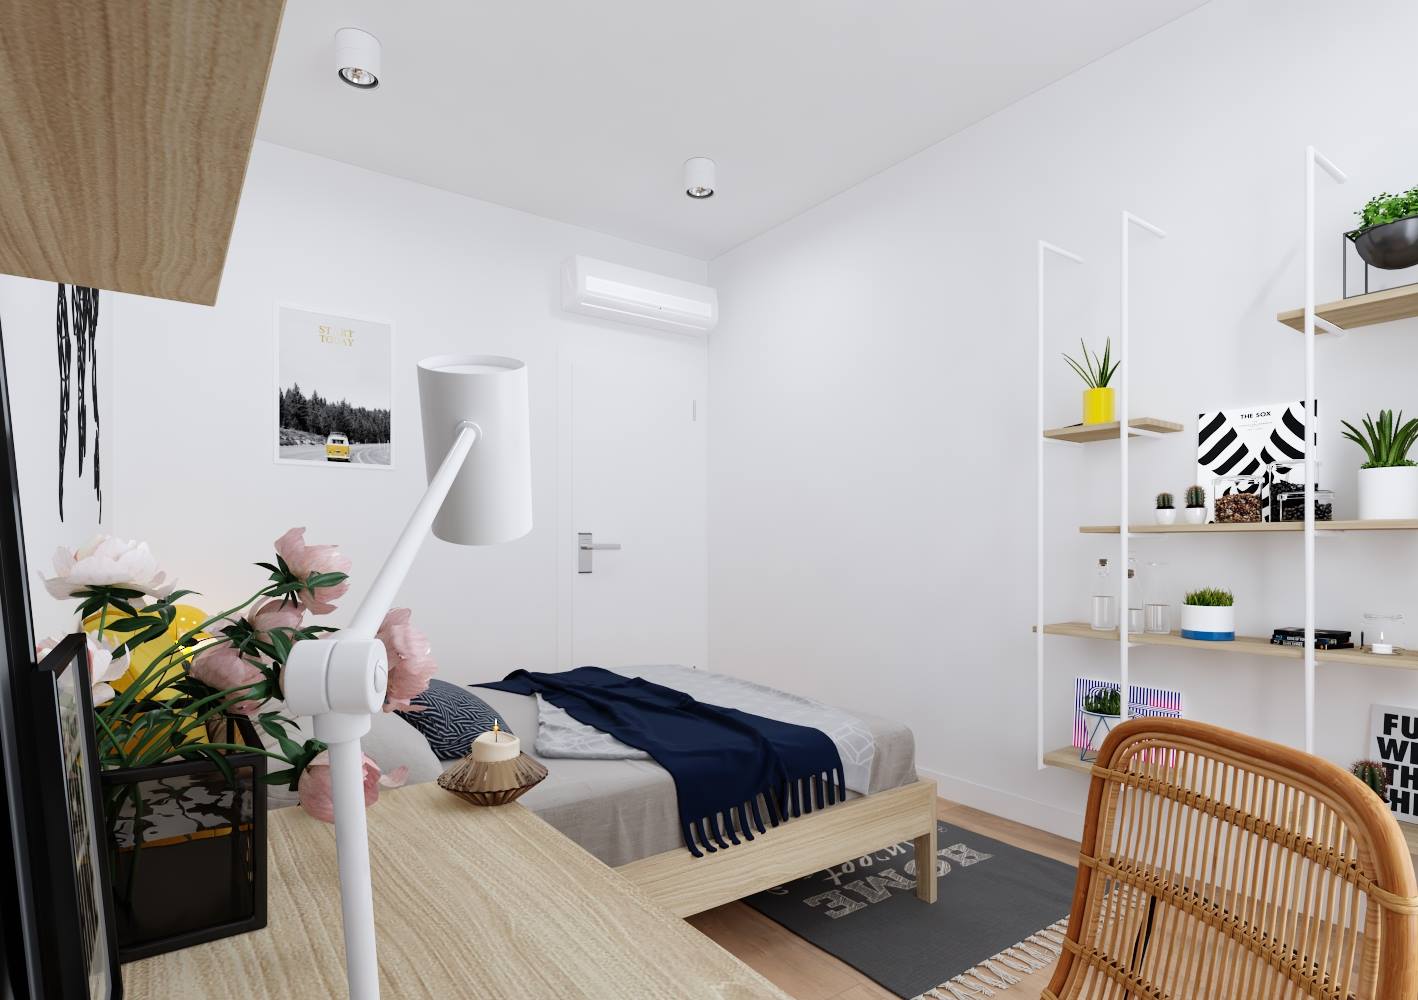 Thiết kế nội thất chung cư hiện đại